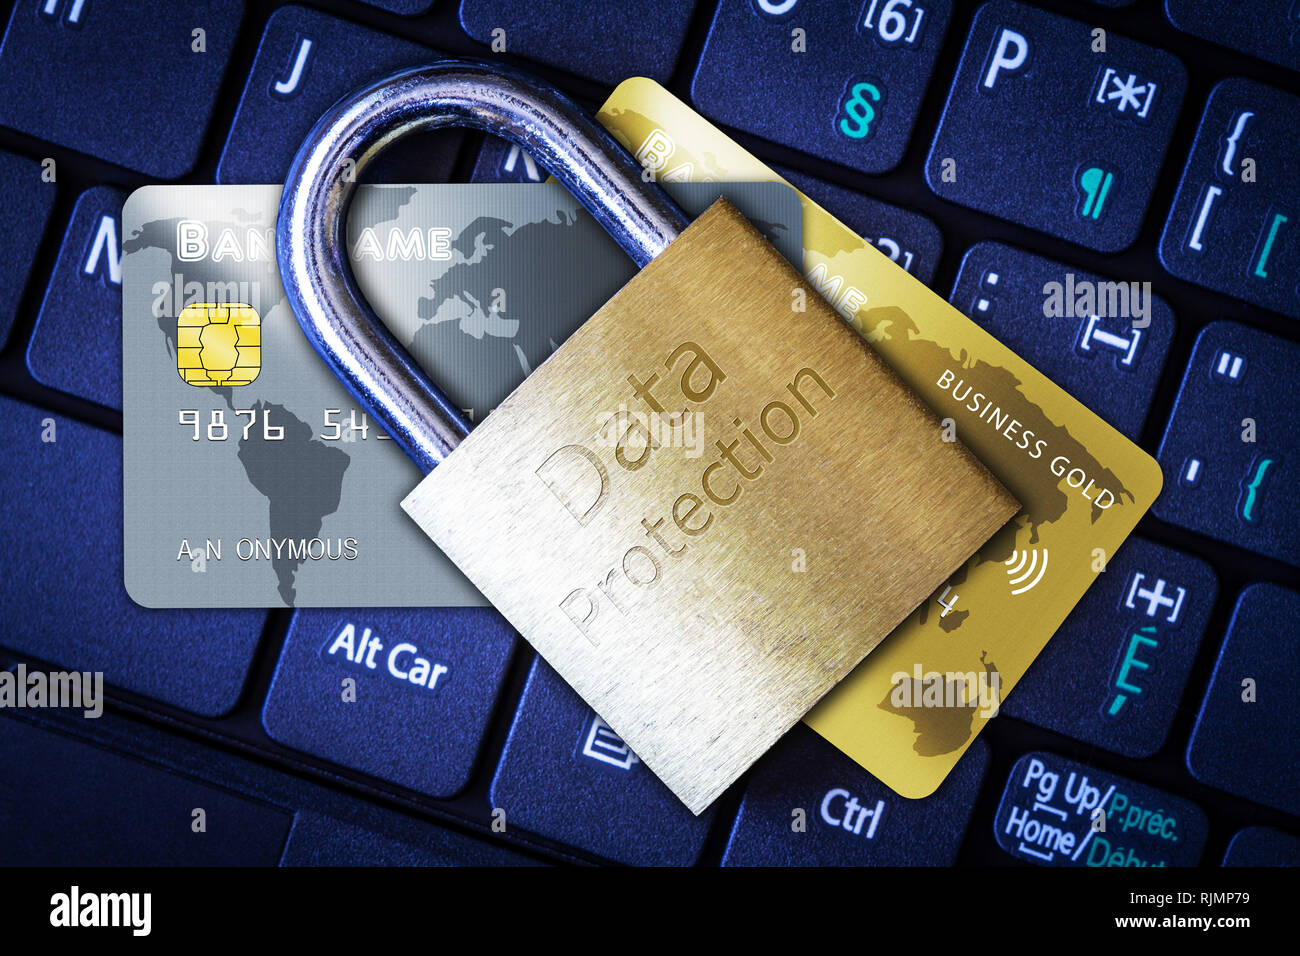 Goldene Vorhängeschloss auf Kredit- oder EC-Karten auf dem Computer Tastatur. Konzept der Internet Security, Datenschutz, Computerkriminalität Verhinderung für online shop Stockfoto